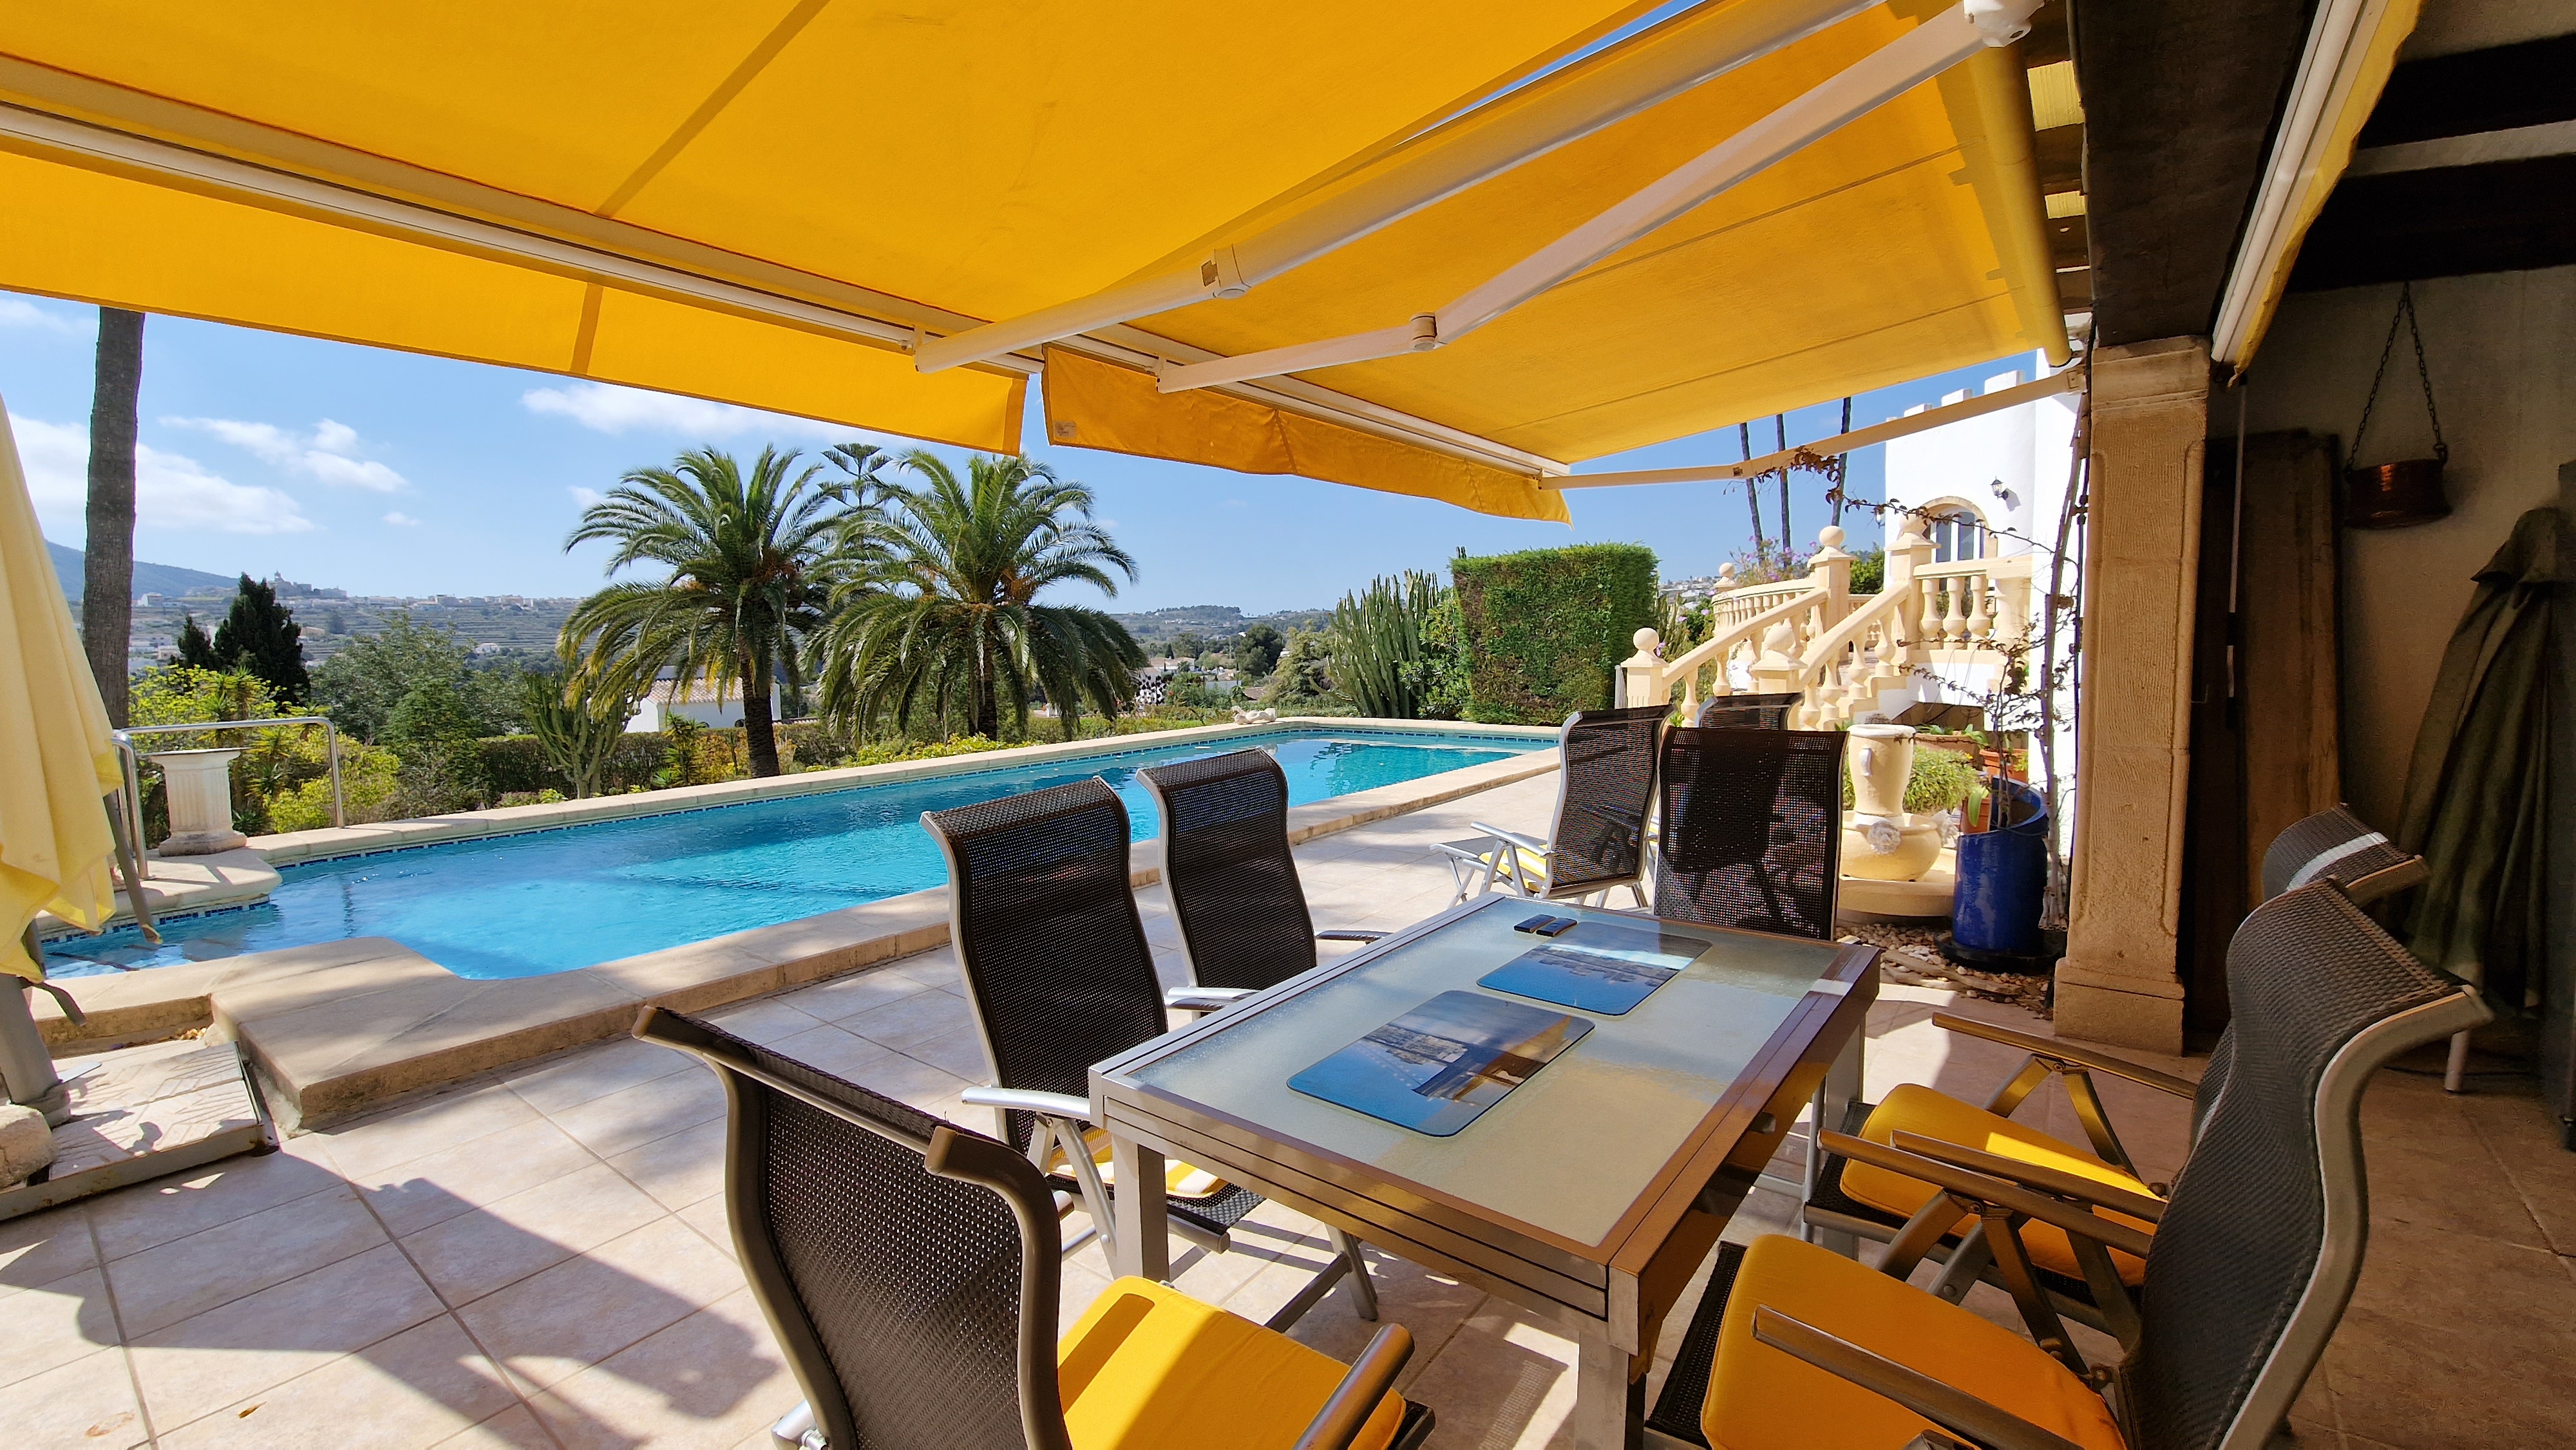 Mediterranean villa with spectacular views